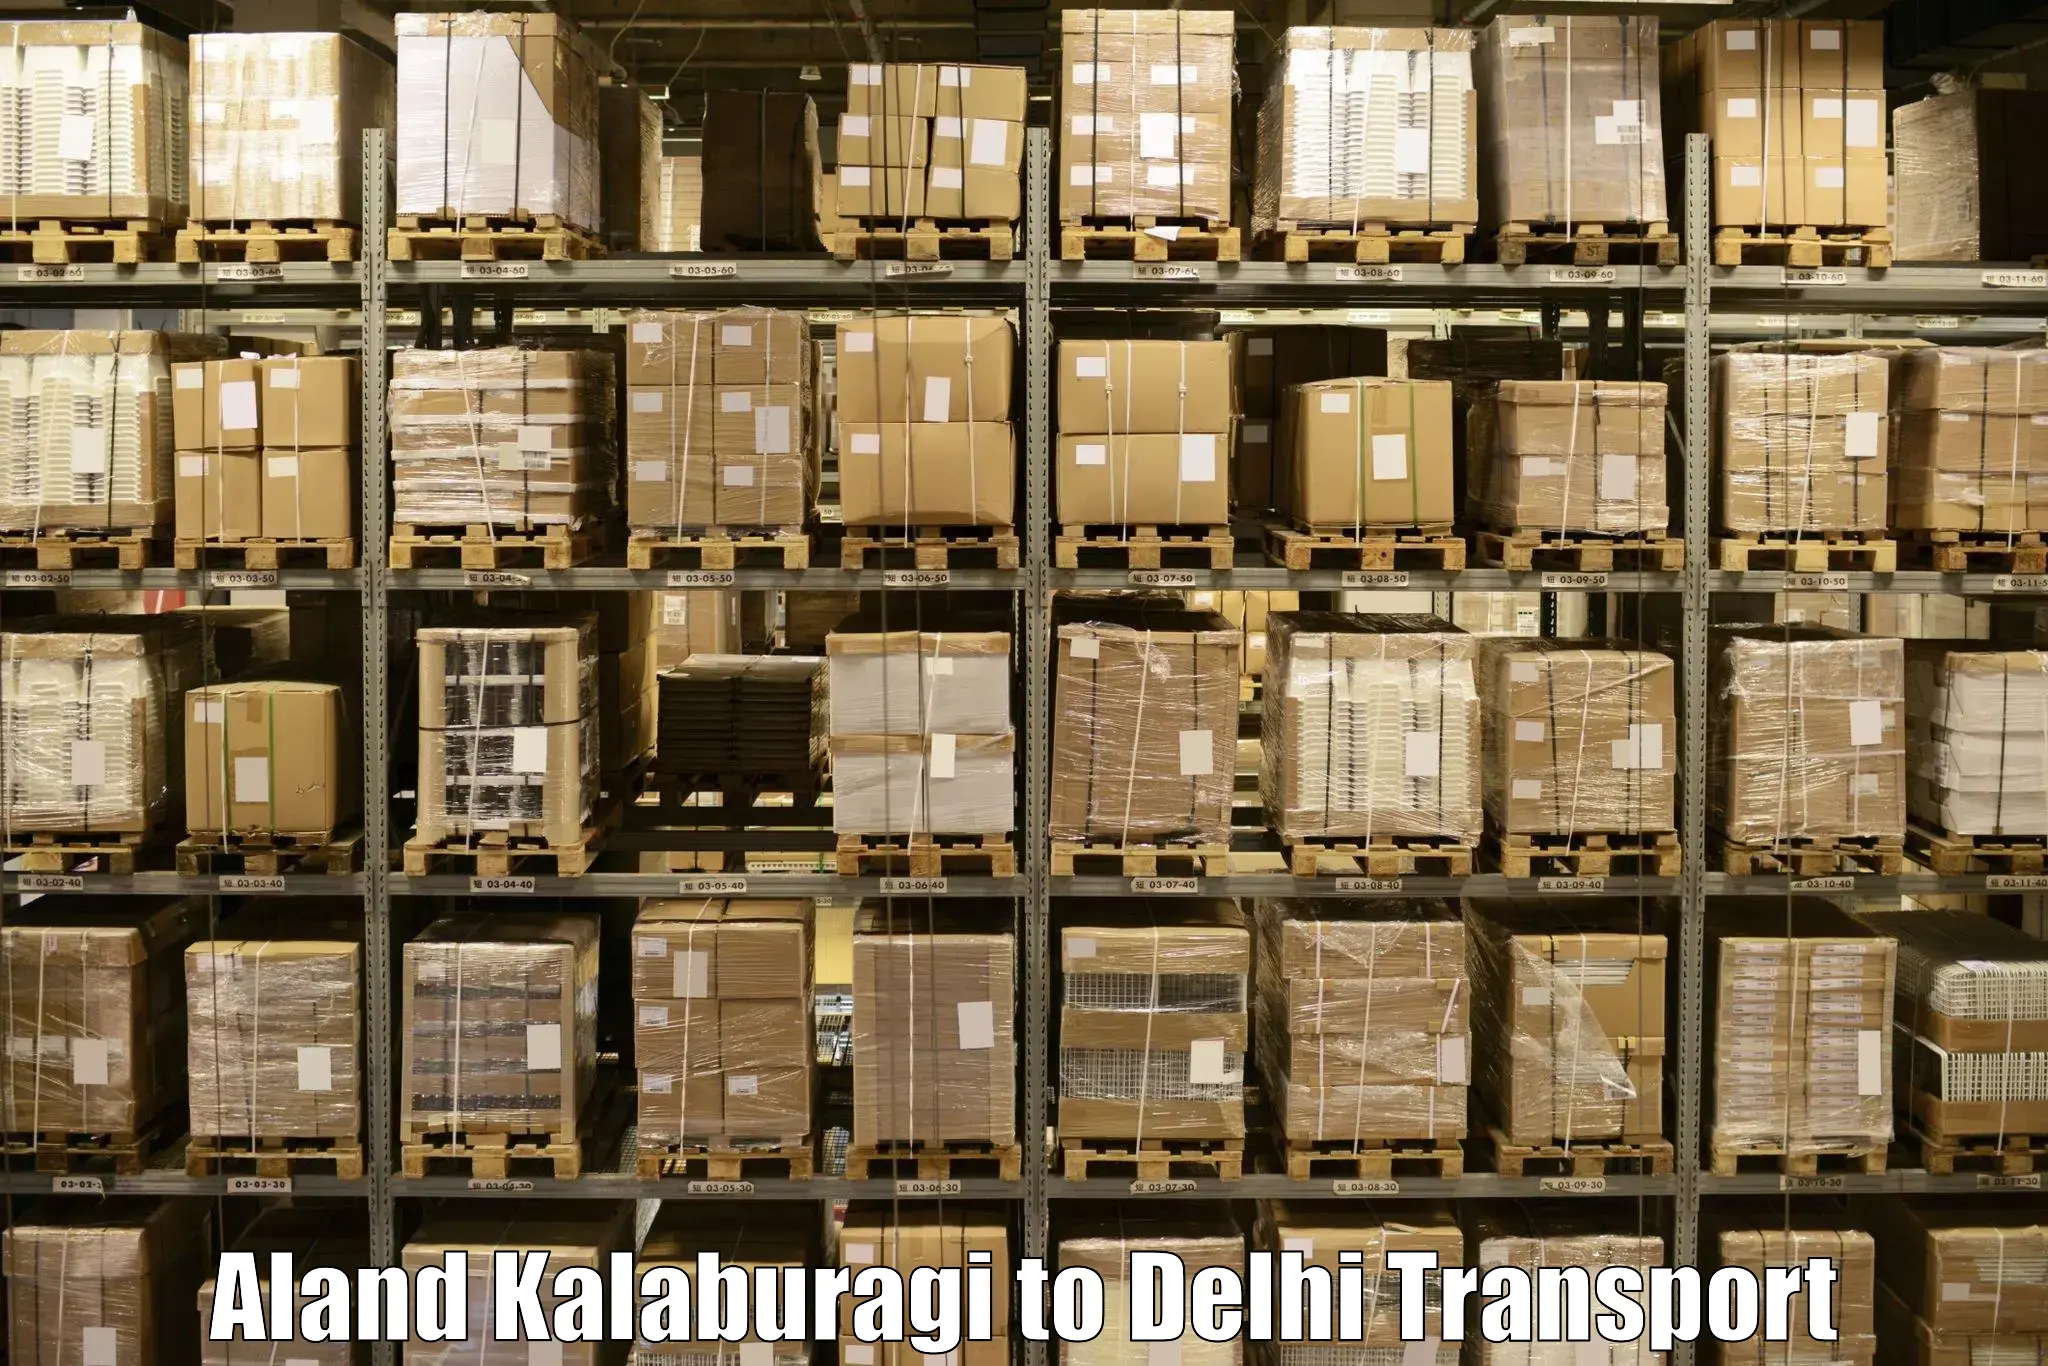 Interstate transport services Aland Kalaburagi to Subhash Nagar